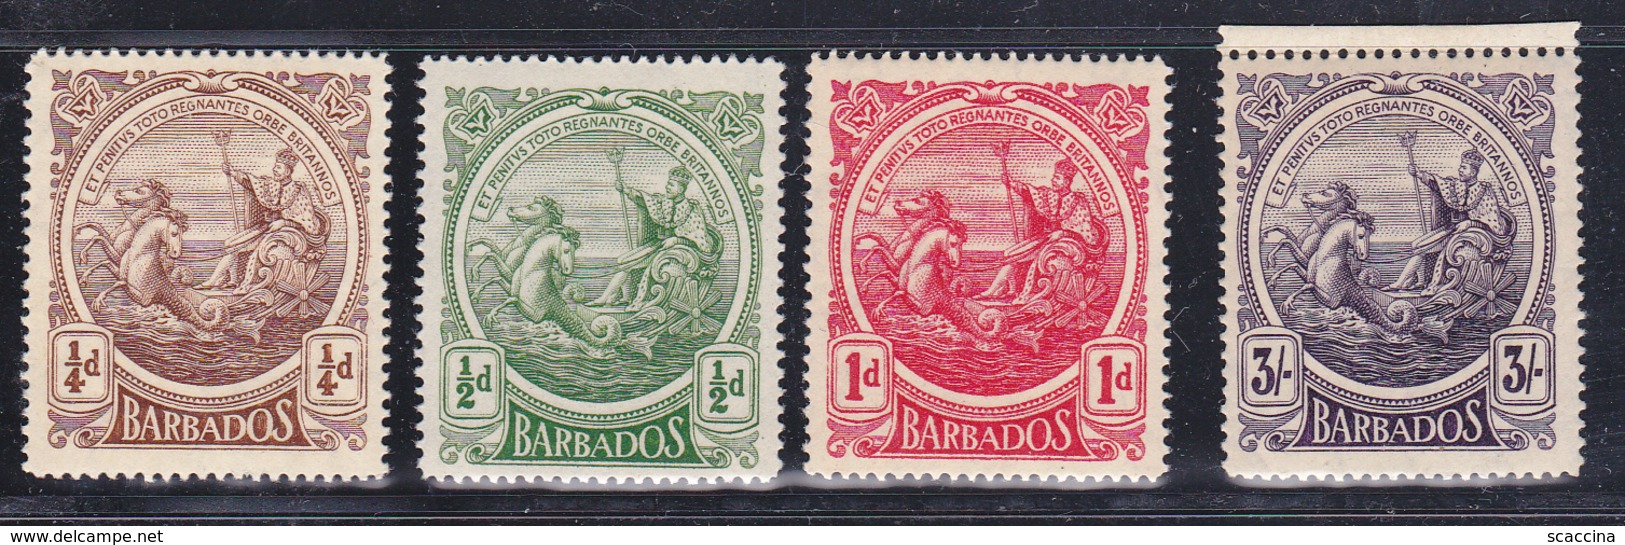 Barbados  Re Giorgio V  1916-18  Yv. 103-05,114  Gb. 181-83,191 MNH ** - Barbados (...-1966)